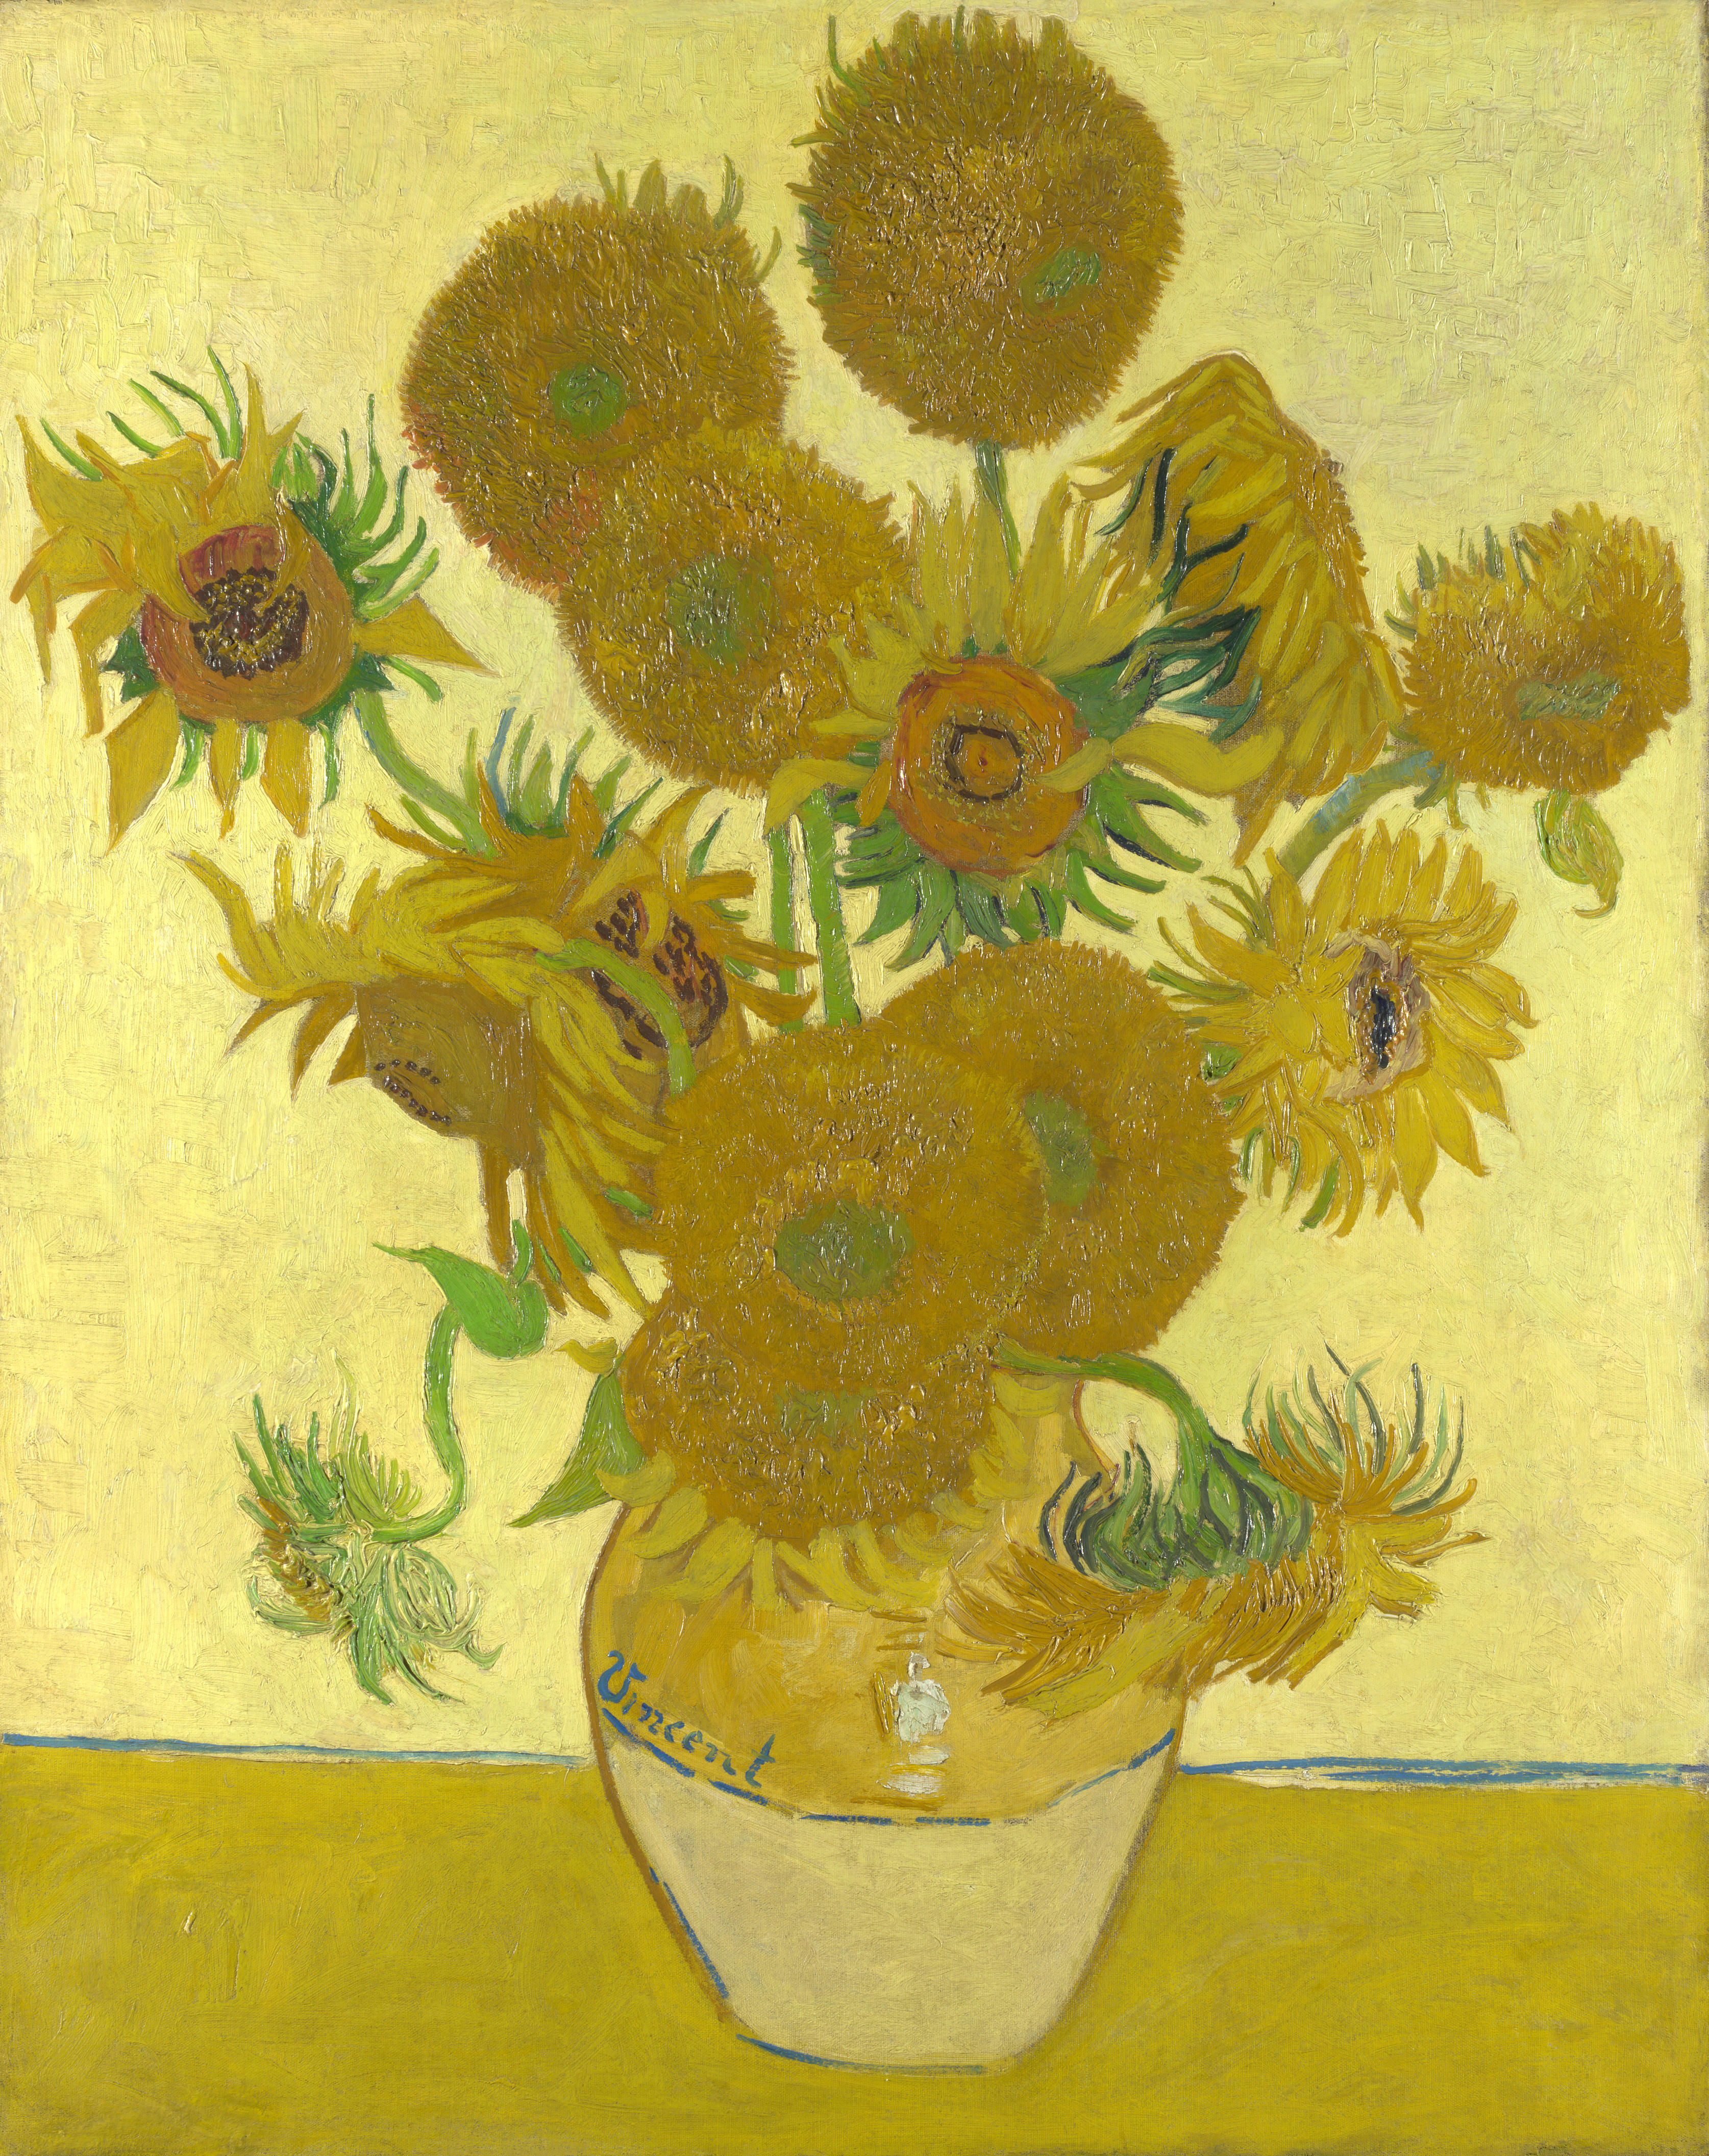 《向日葵》 by 文森· 威廉·梵高 -  1888年 - 92.1×73厘米 